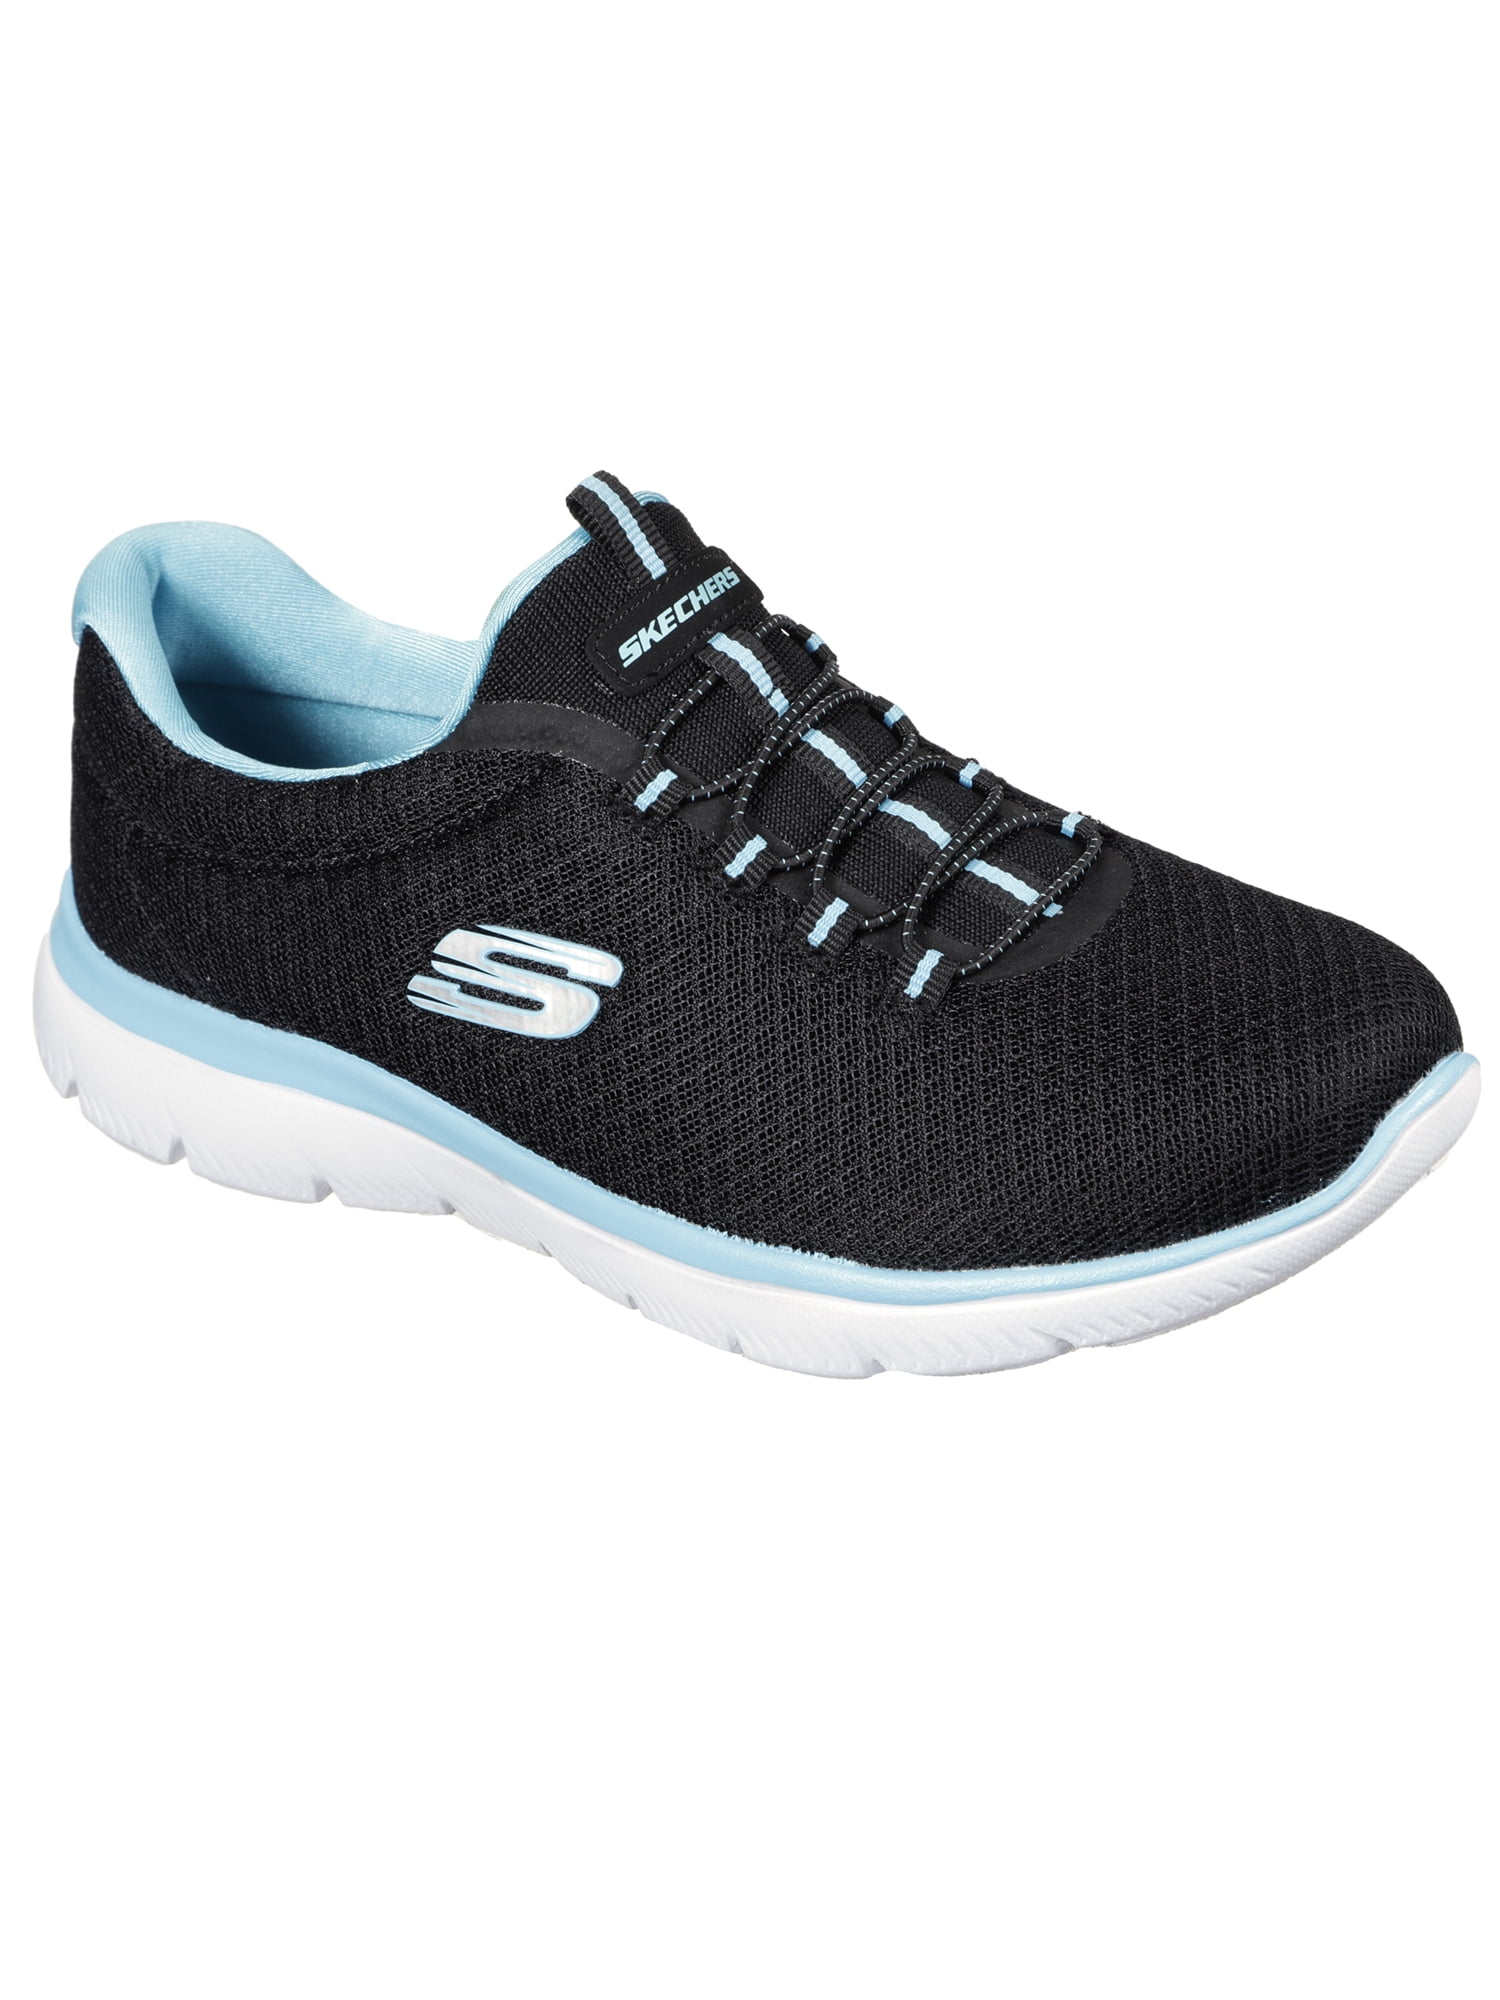 Skechers Women's Sport Mesh Slip-on Sneaker Available) - Walmart.com